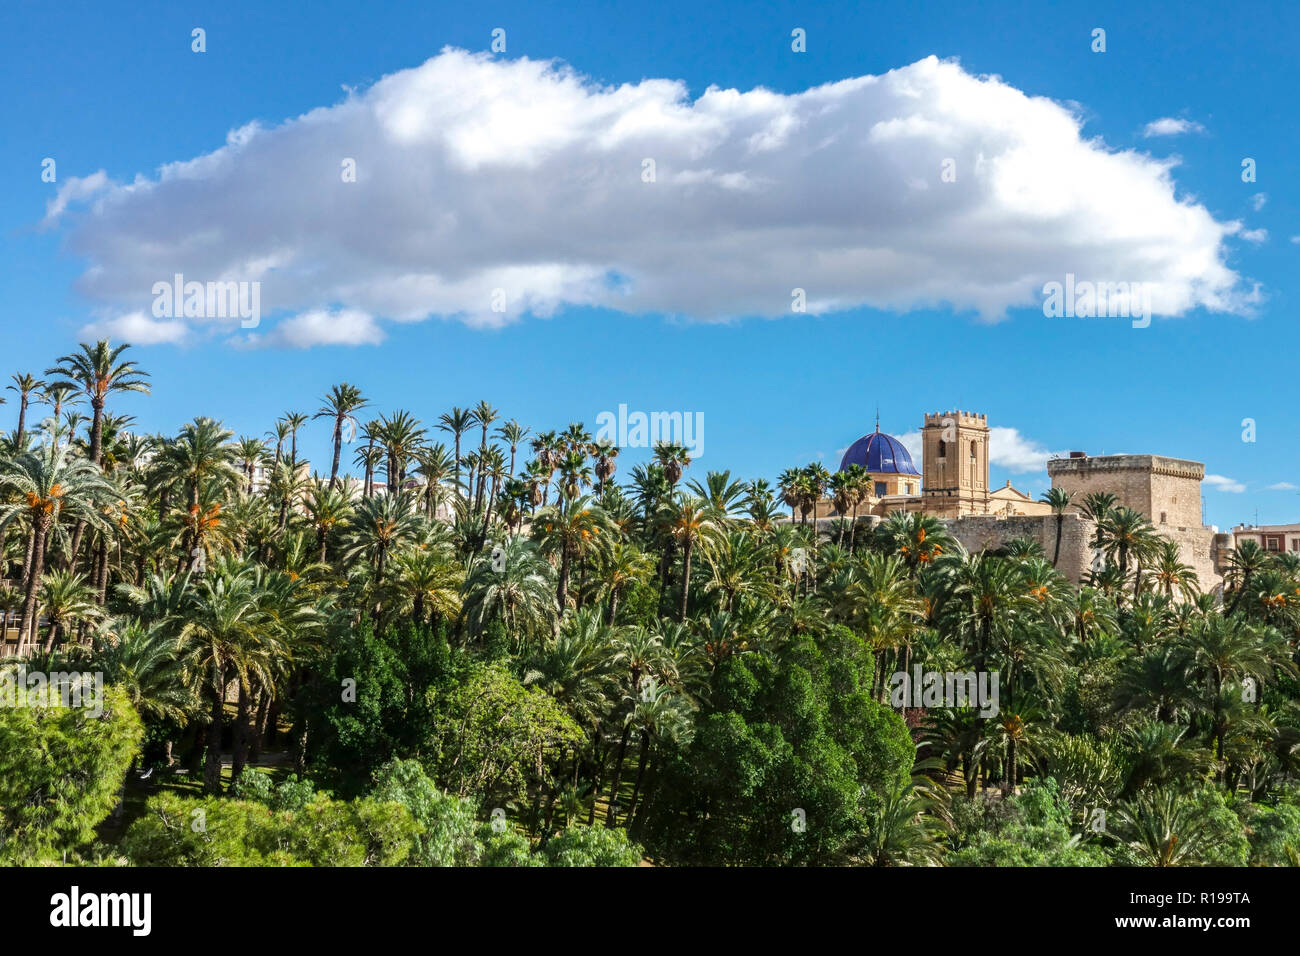 La grande nuvola sopra la Basilica di Santa Maria e il Parc Municipal El Palmeral Elche, splendida vista panoramica sulle palme di Elche Costa Blanca, Spagna e Europa Foto Stock